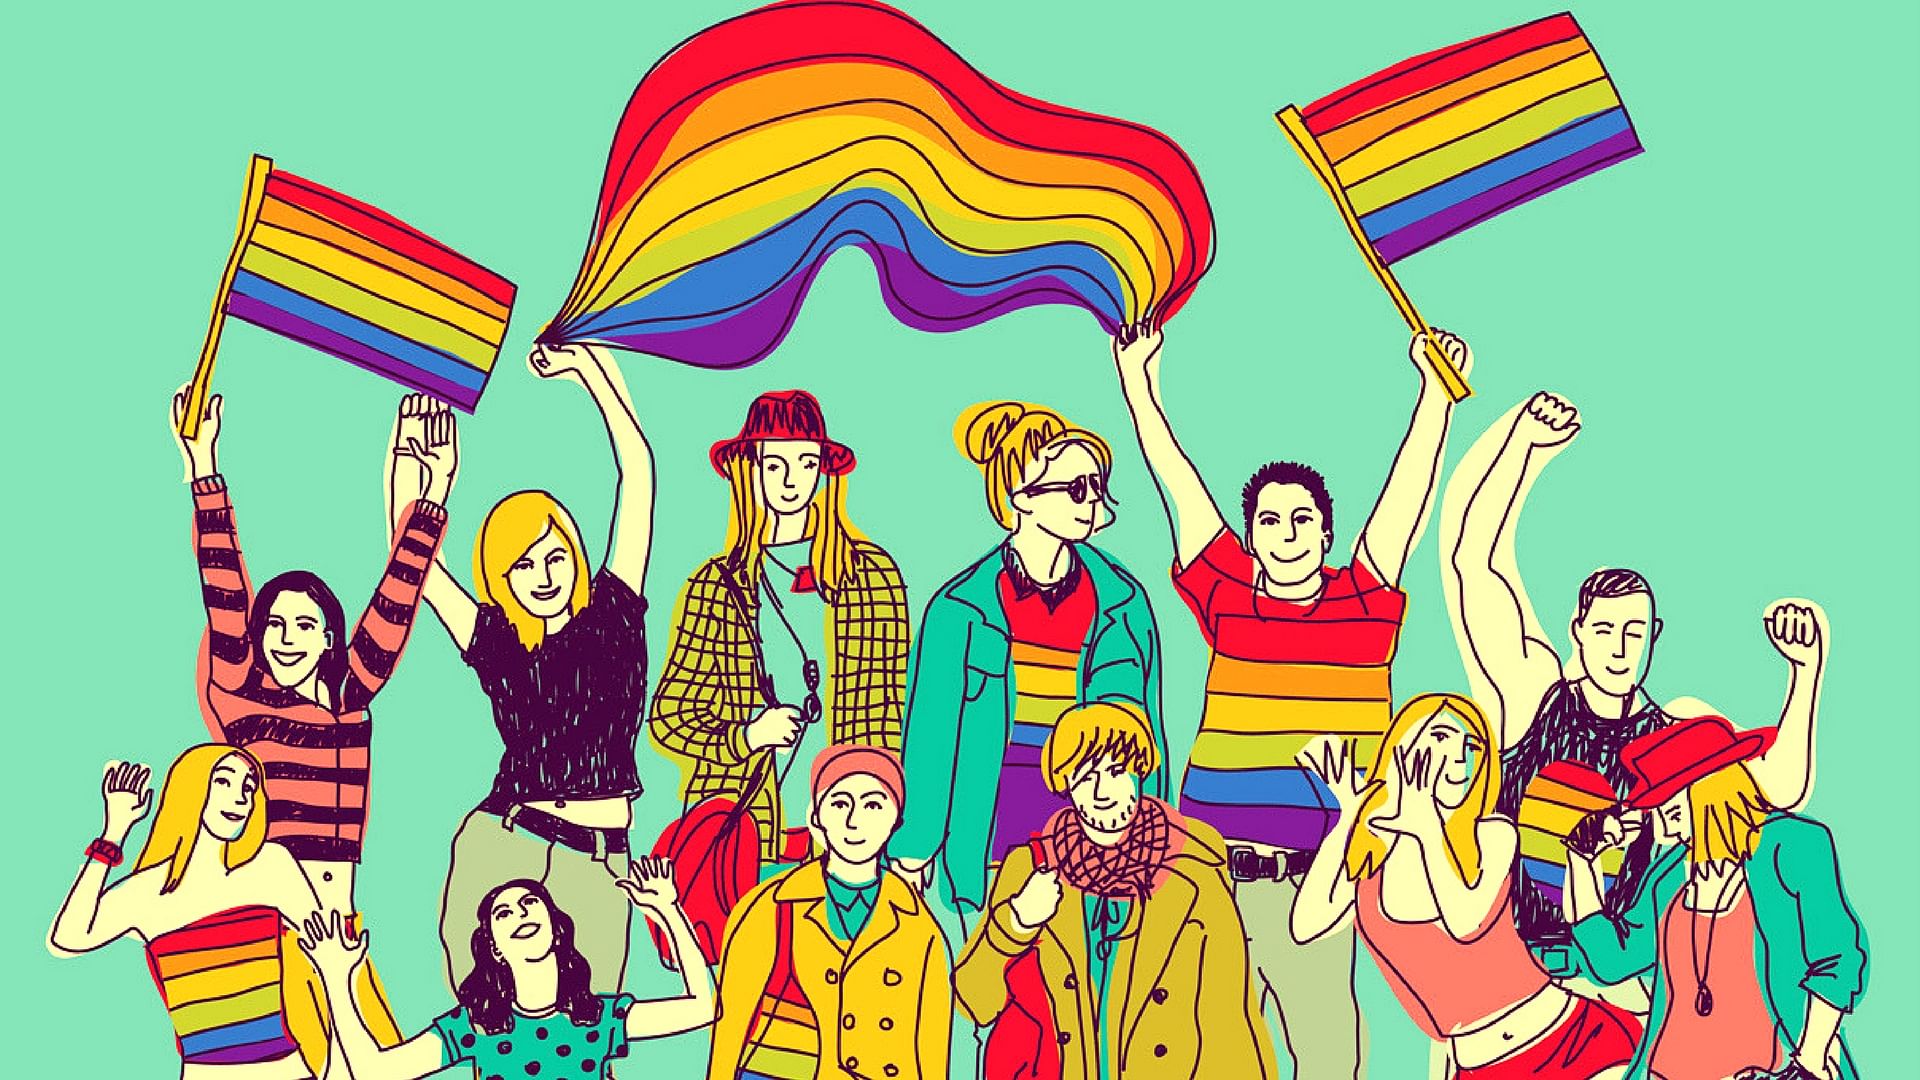 Why do we think mocking LGBTQ+ folk is okay?